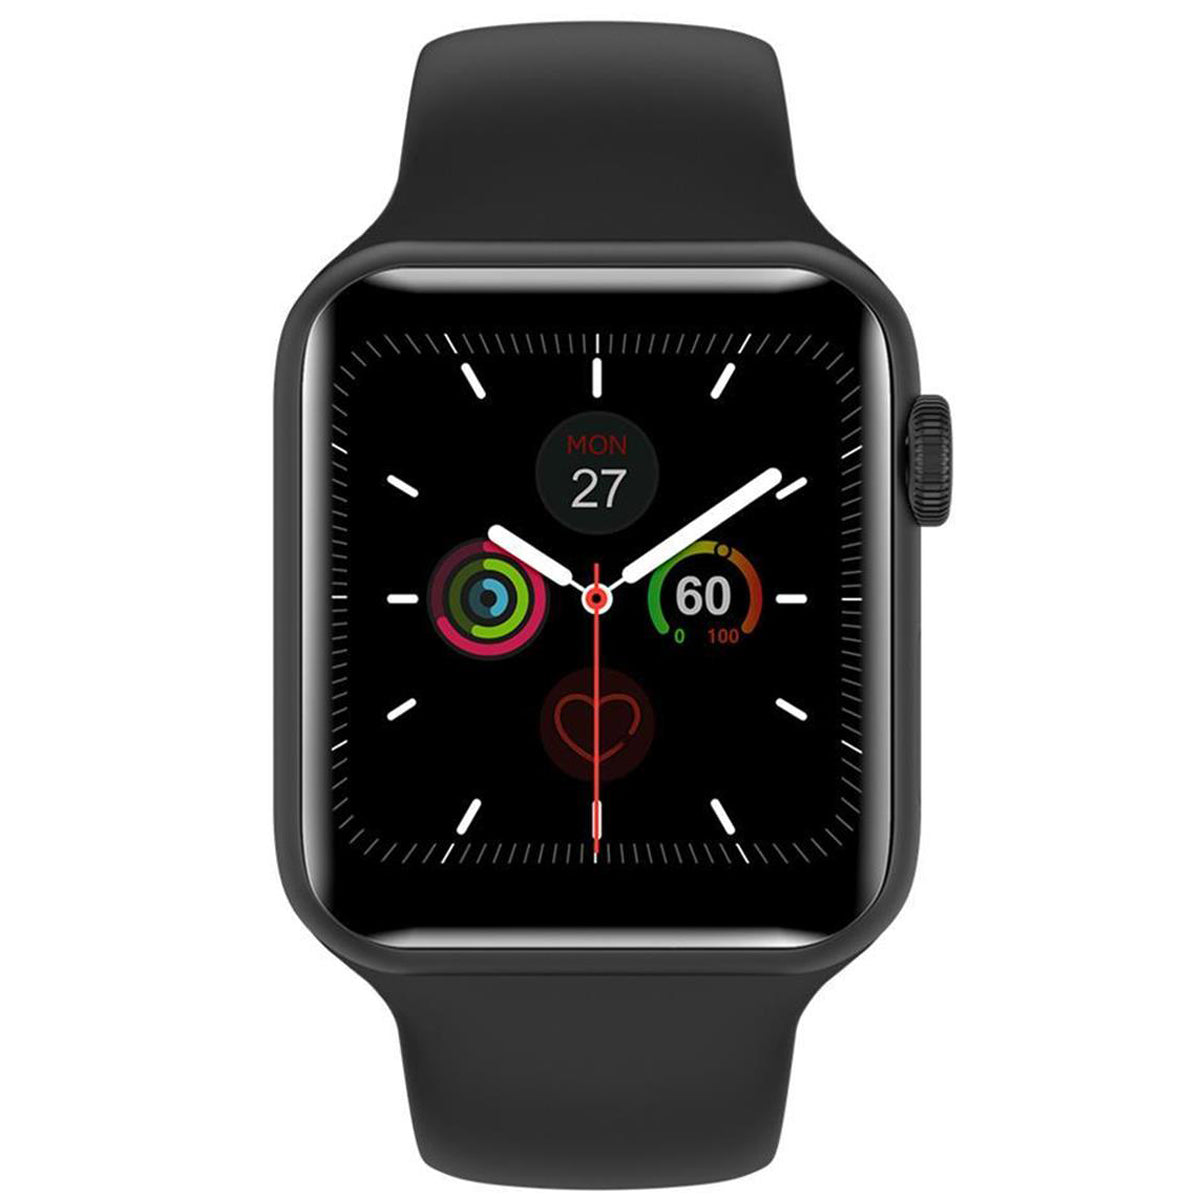 Fralugio Reloj Smartwatch W26 Plus Notificaciones Llamadas